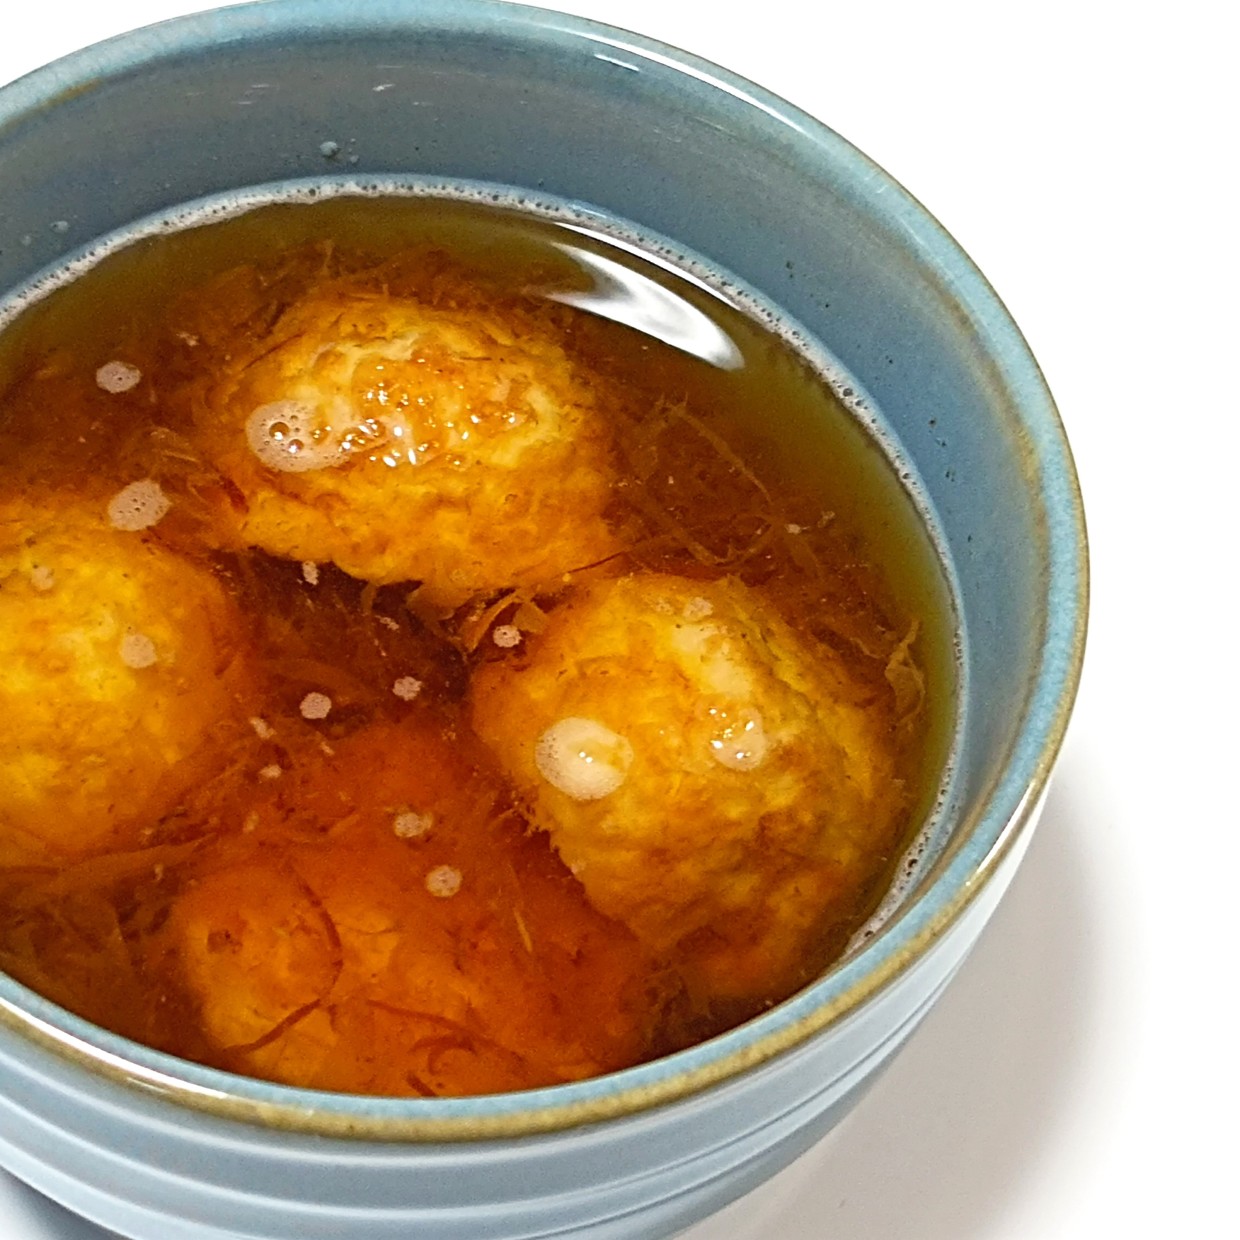  「冷凍たこ焼き」で“明石焼き風スープ”をつくる方法 